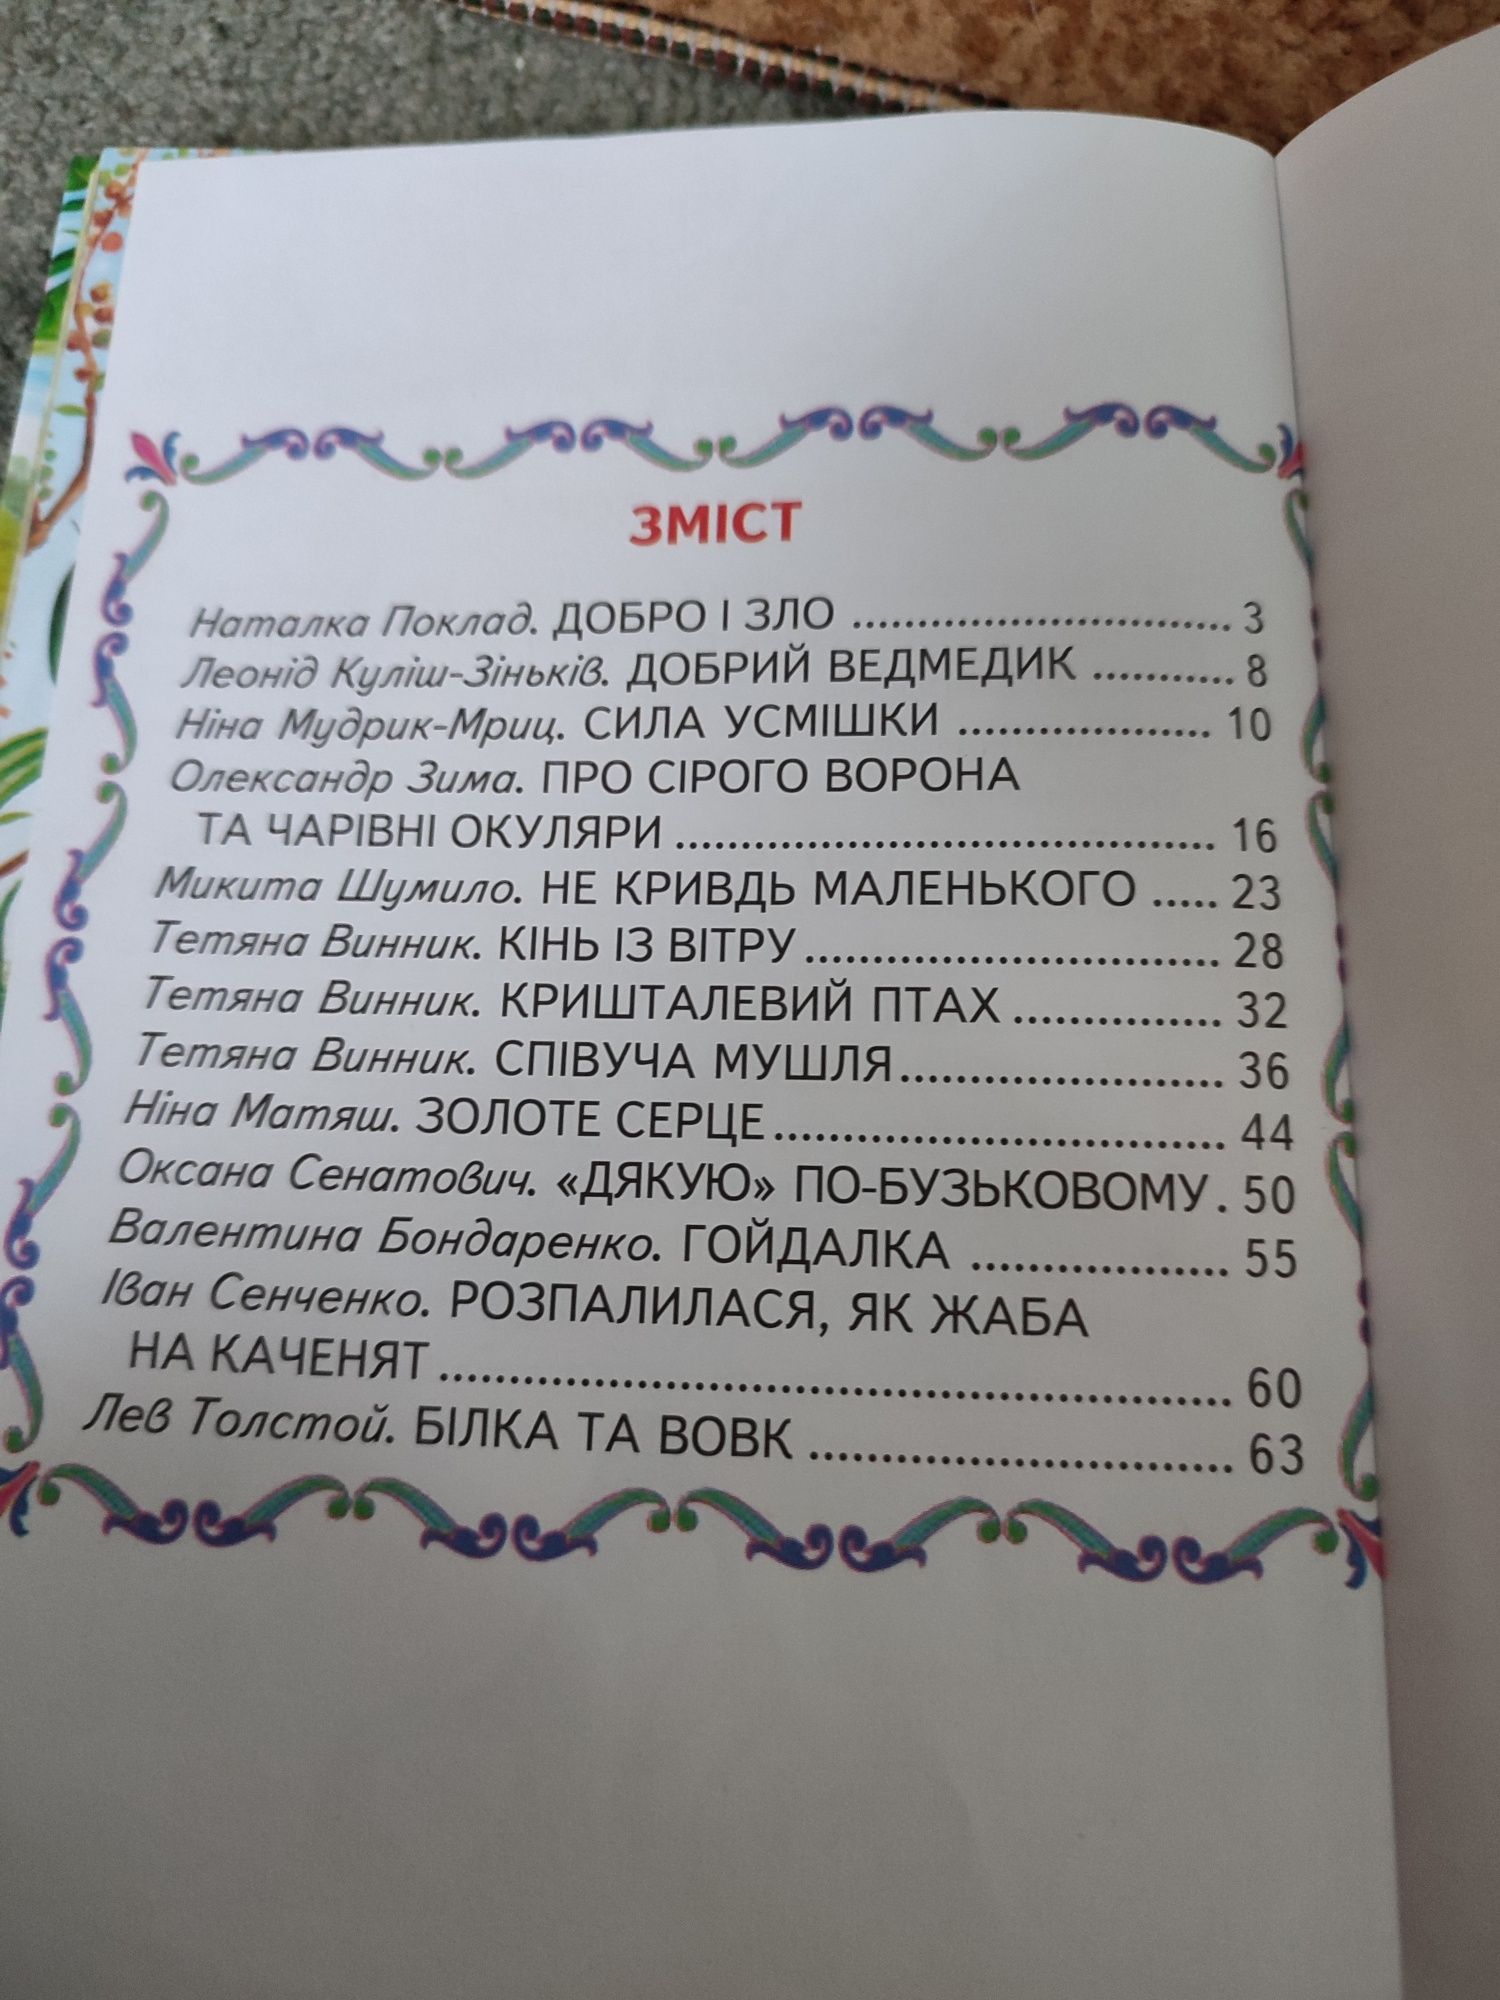 Книги українською мовою від 1 до 8 років